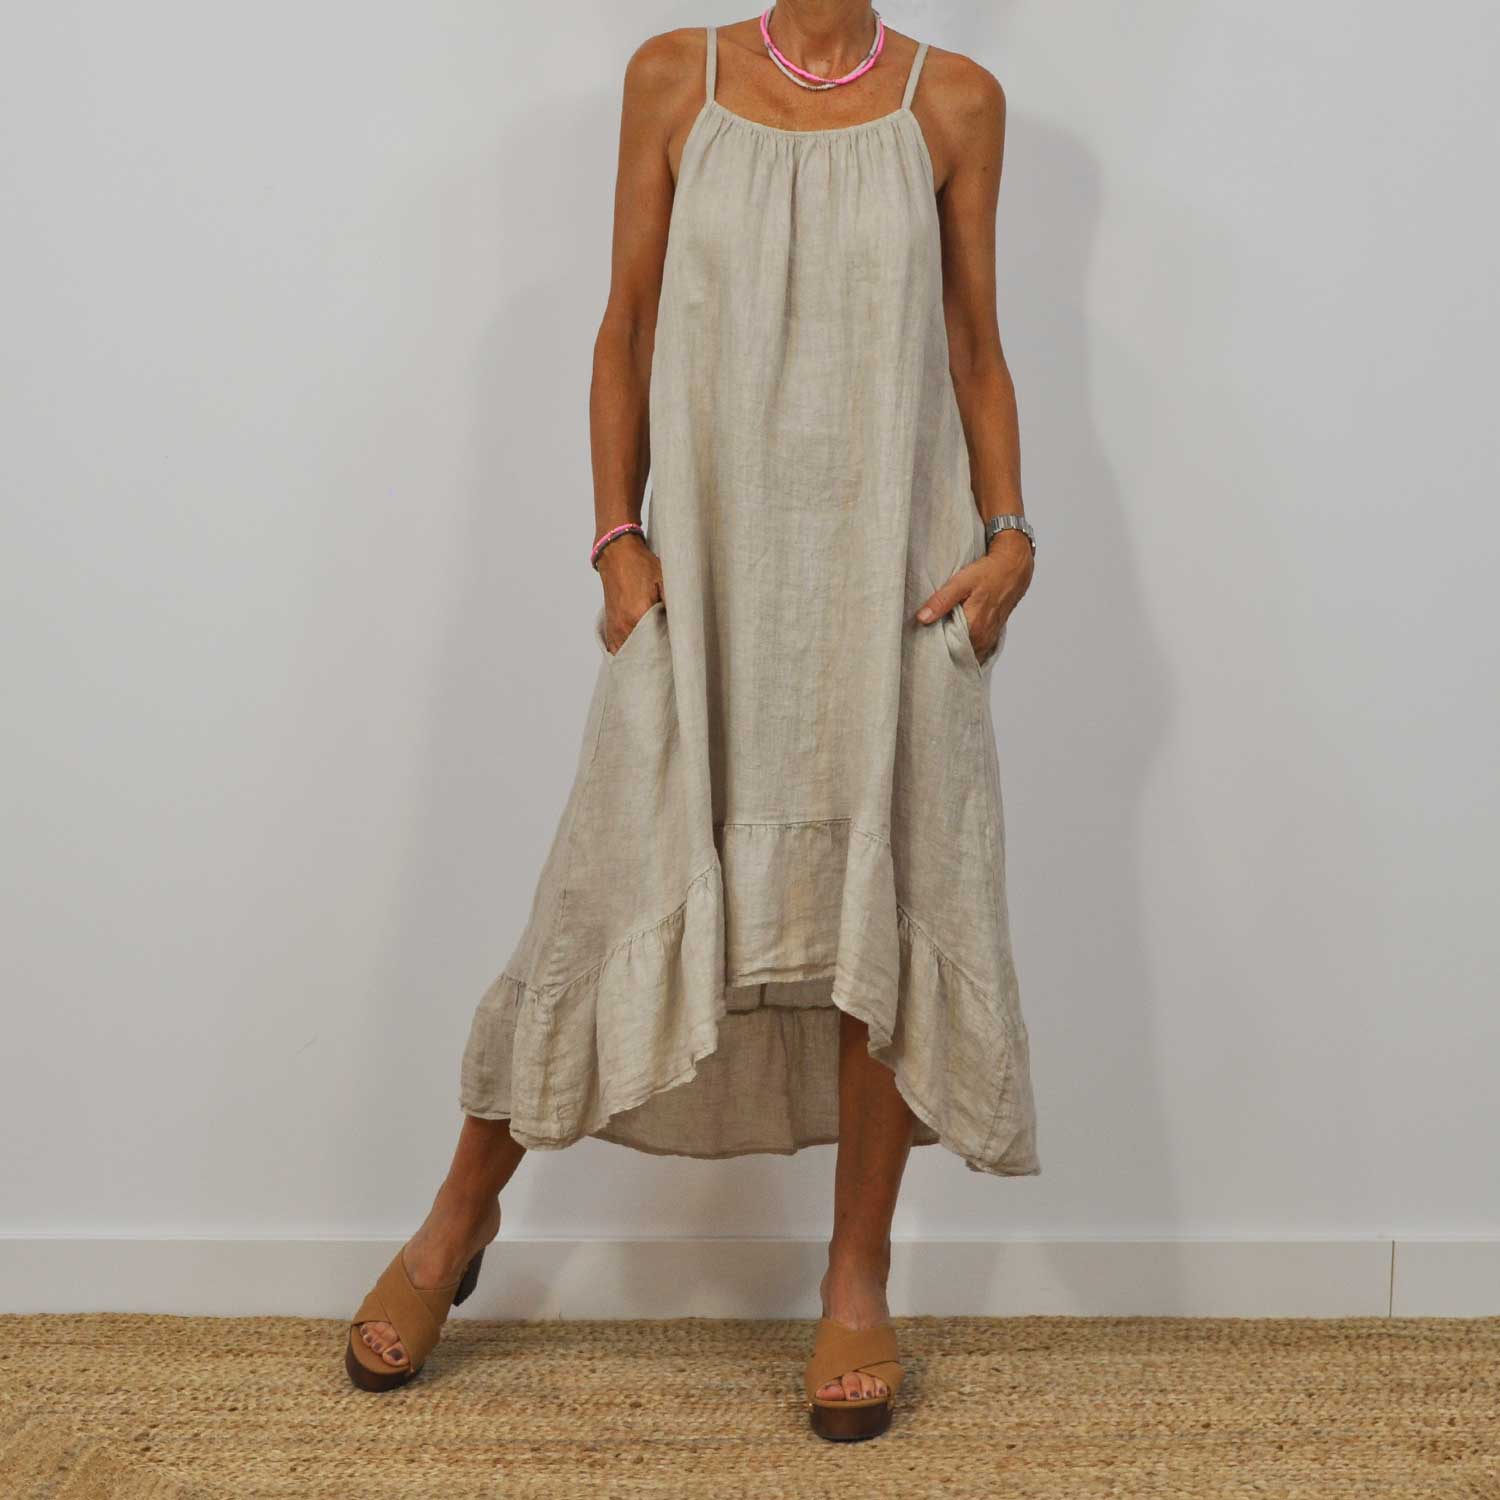 Beige asymmetrical linen dress